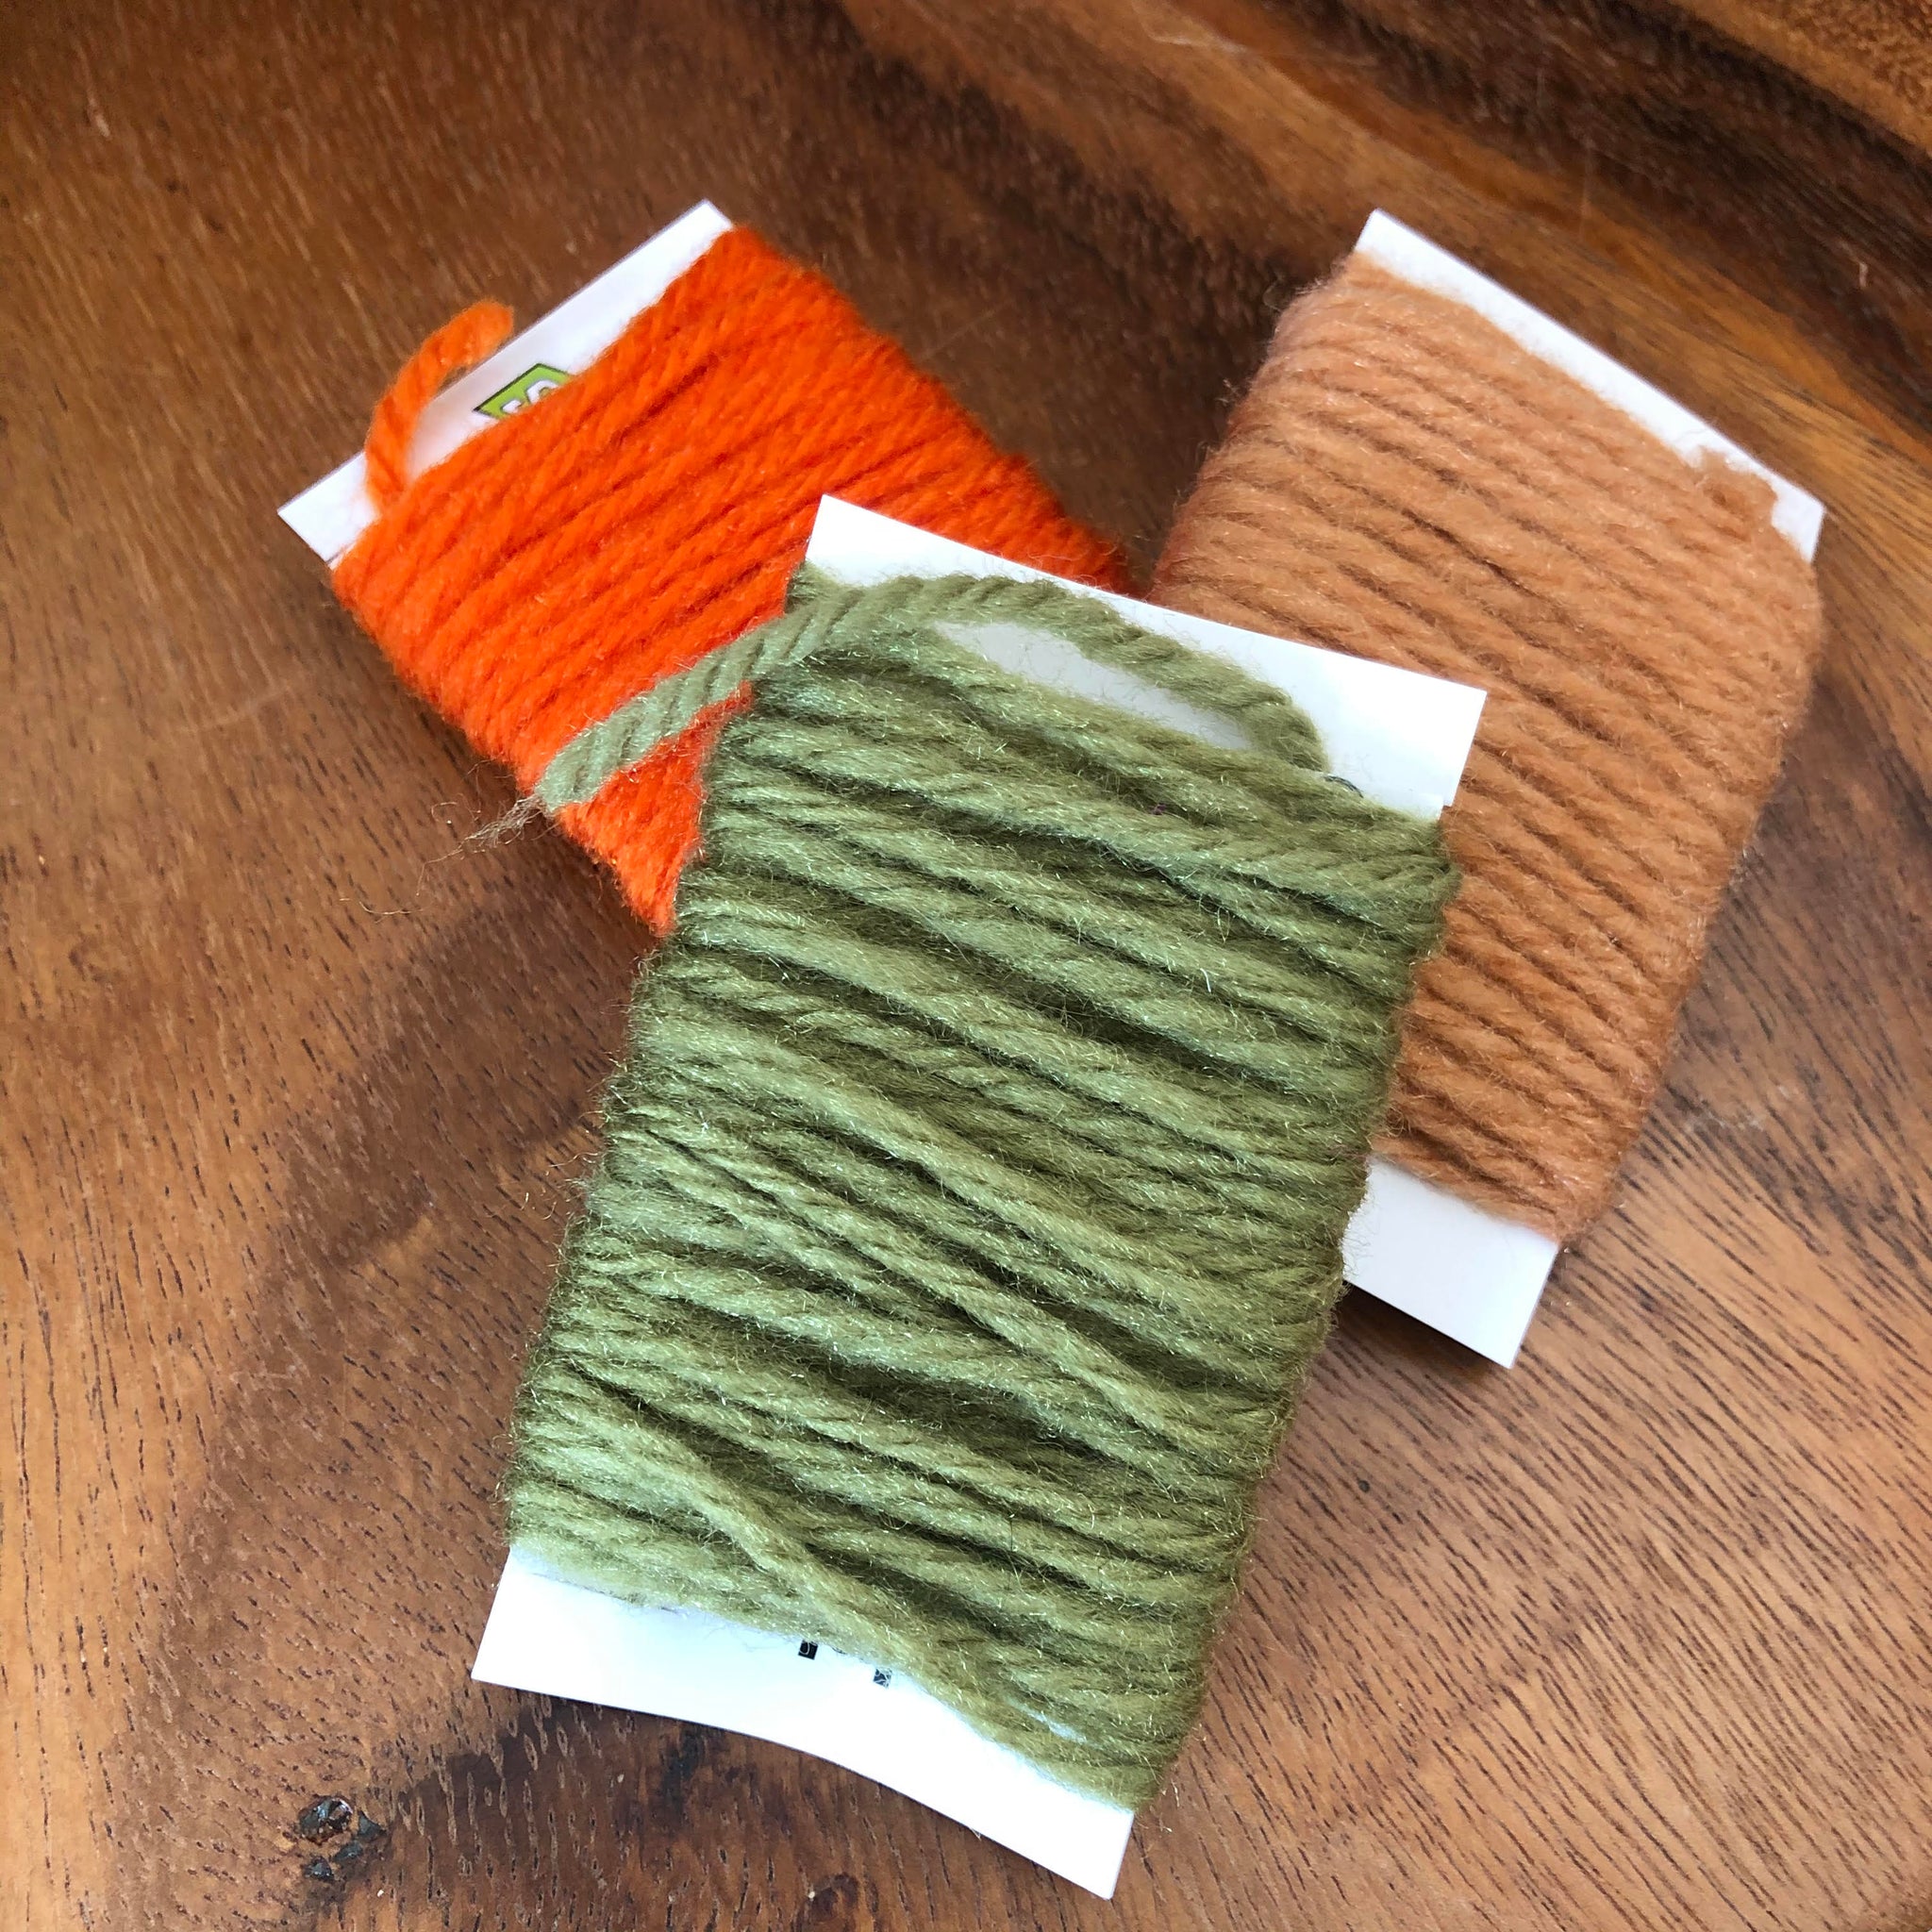 Wool yarn for bugs : r/flyfishing